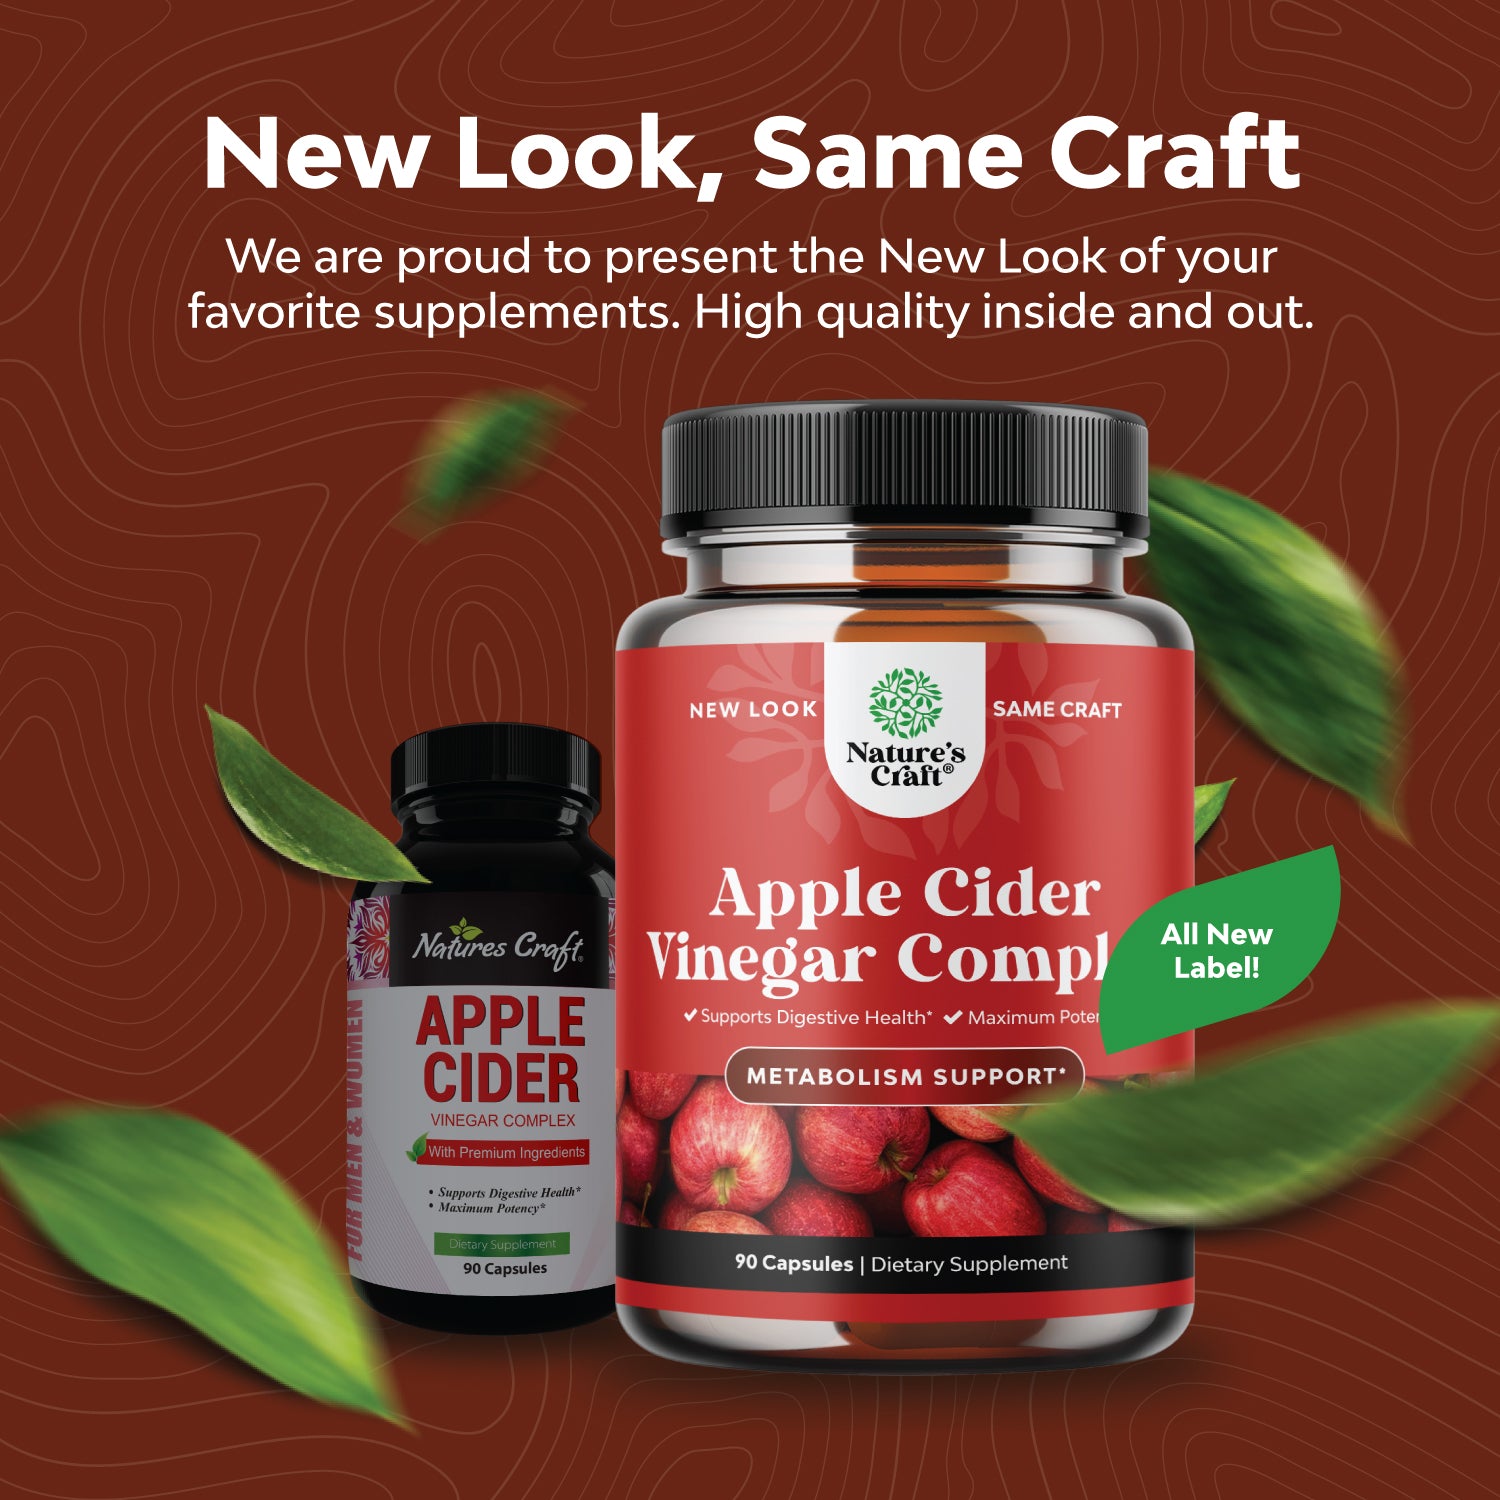 Apple Cider Vinegar Complex - 90 Capsules - Nature's Craft